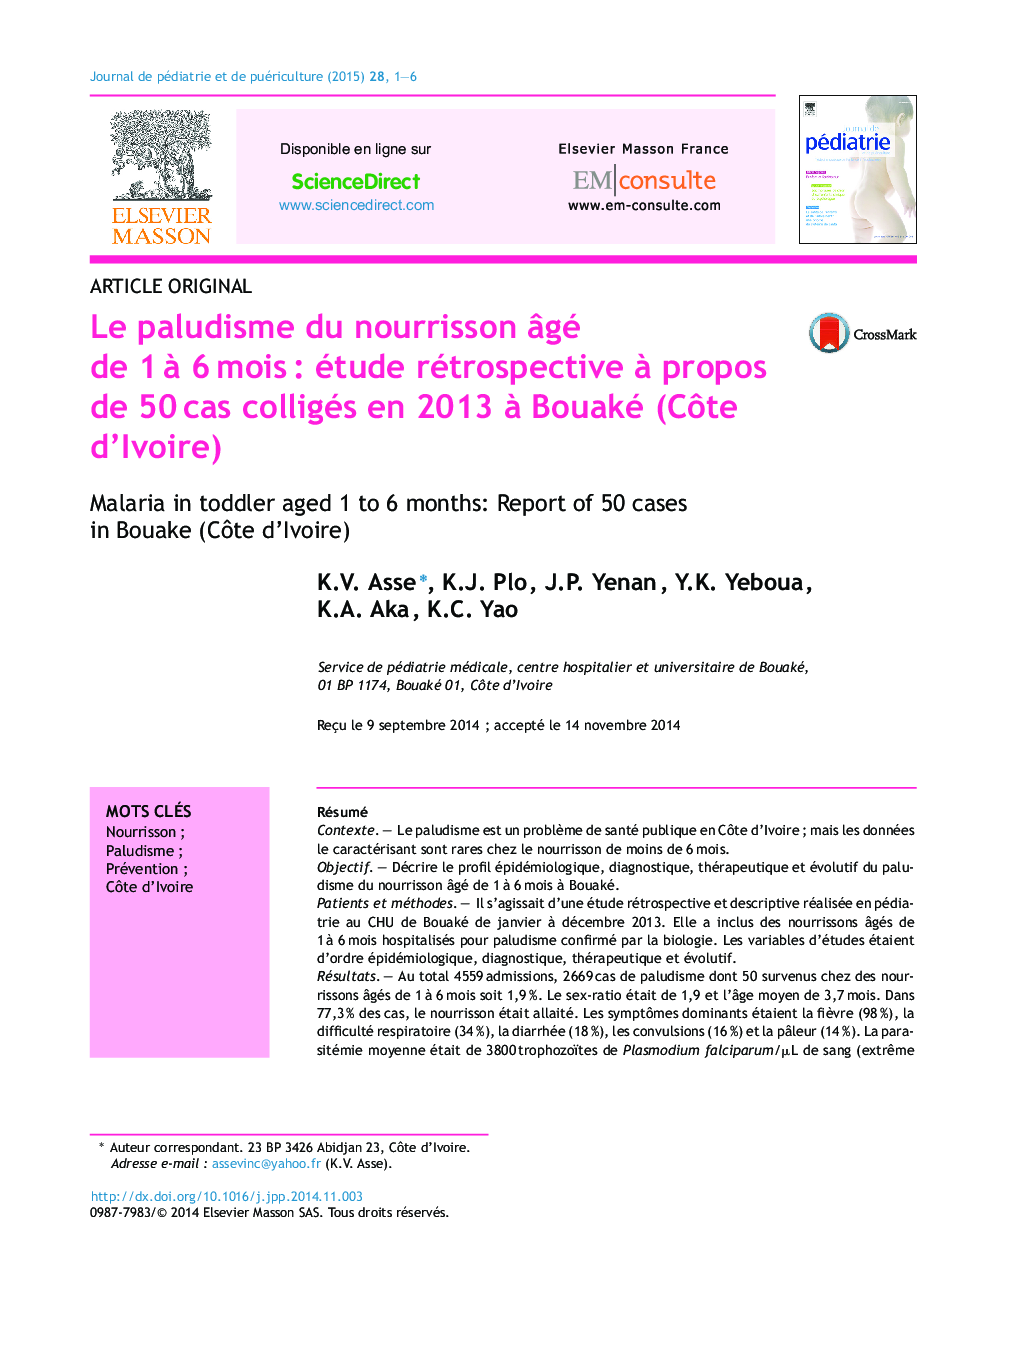 Le paludisme du nourrisson âgé de 1 à 6 mois : étude rétrospective à propos de 50 cas colligés en 2013 à Bouaké (Côte d’Ivoire)